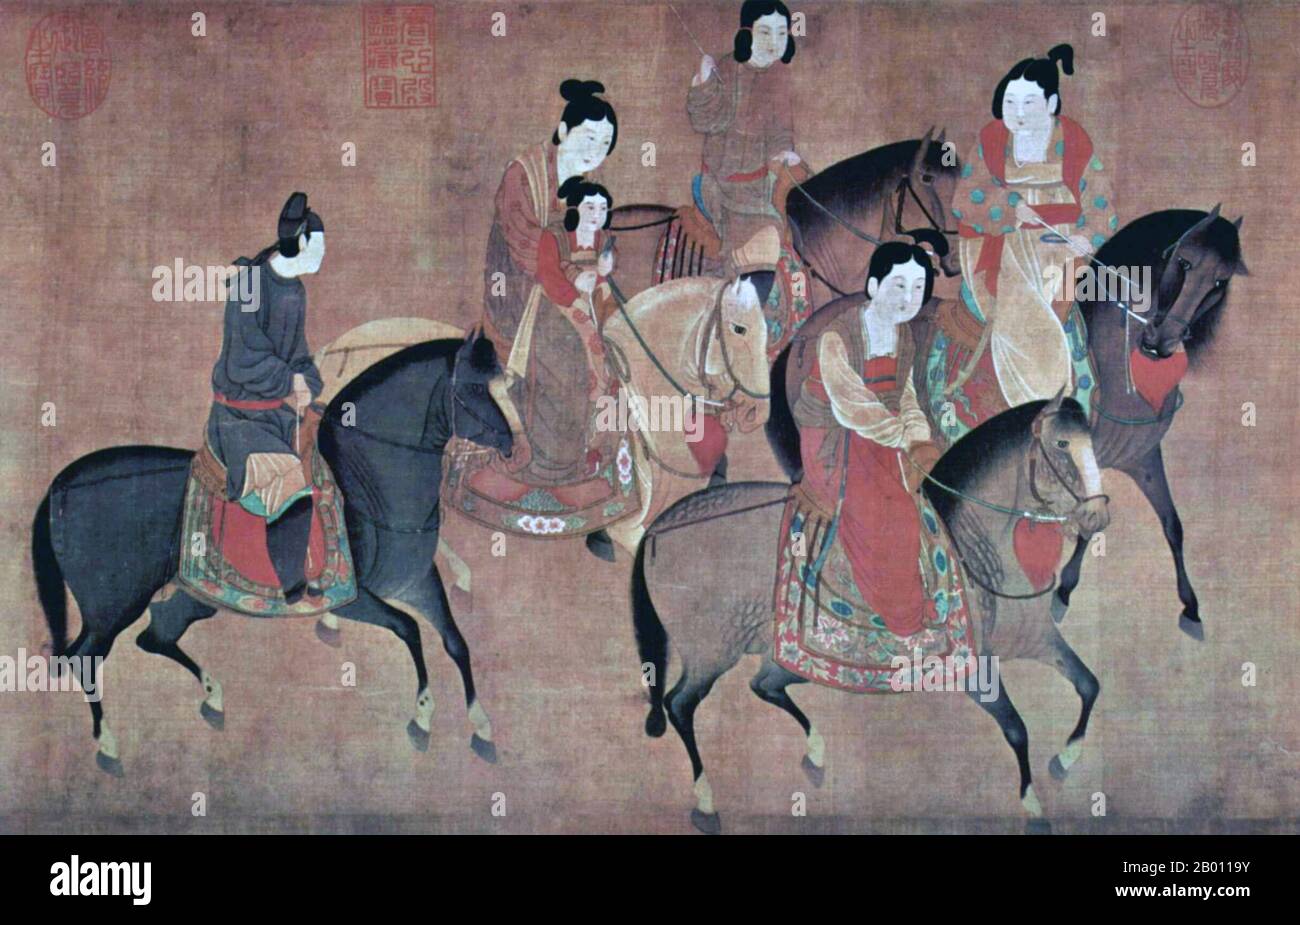 Chine: Lady Kuo Kuo circonscription avec ses sœurs. Peinture de défilement à la main de la dynastie Song du XIIe siècle par Li Gonglin (1049-1106), une version ultérieure d'une peinture datant du 8e siècle par l'artiste Zhang Xuan de la dynastie Tang (713-755). Banque D'Images